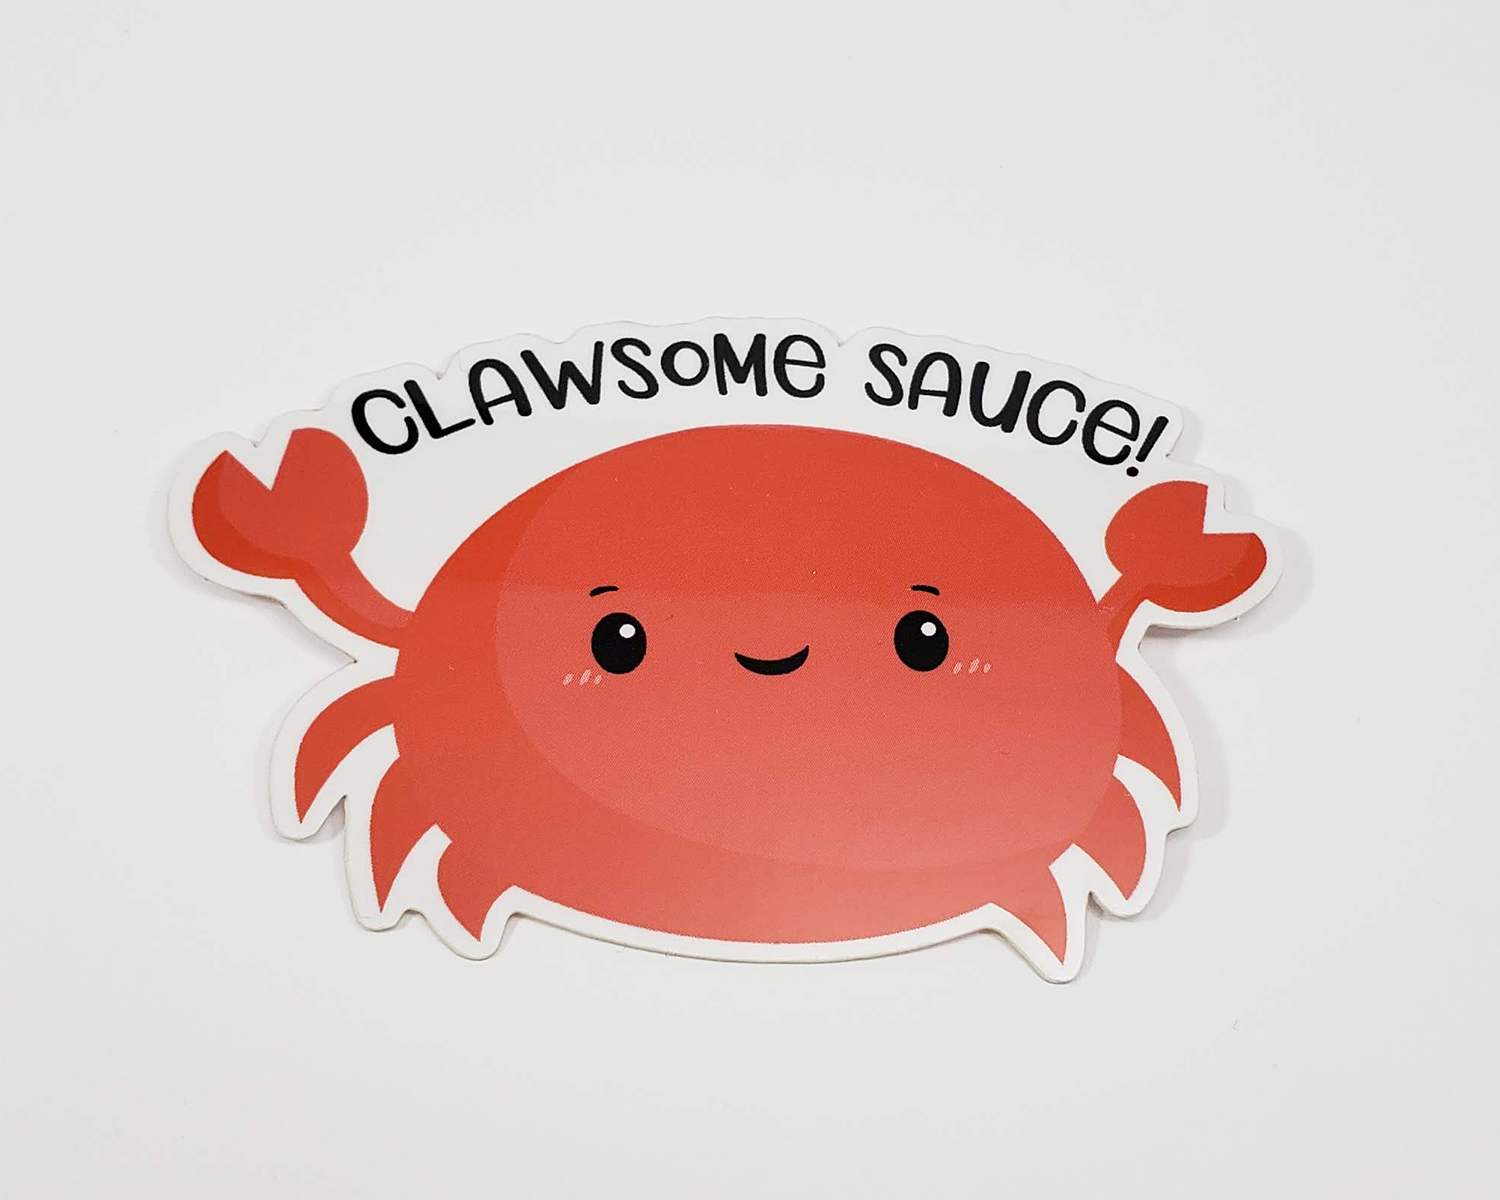 Crab Sticker